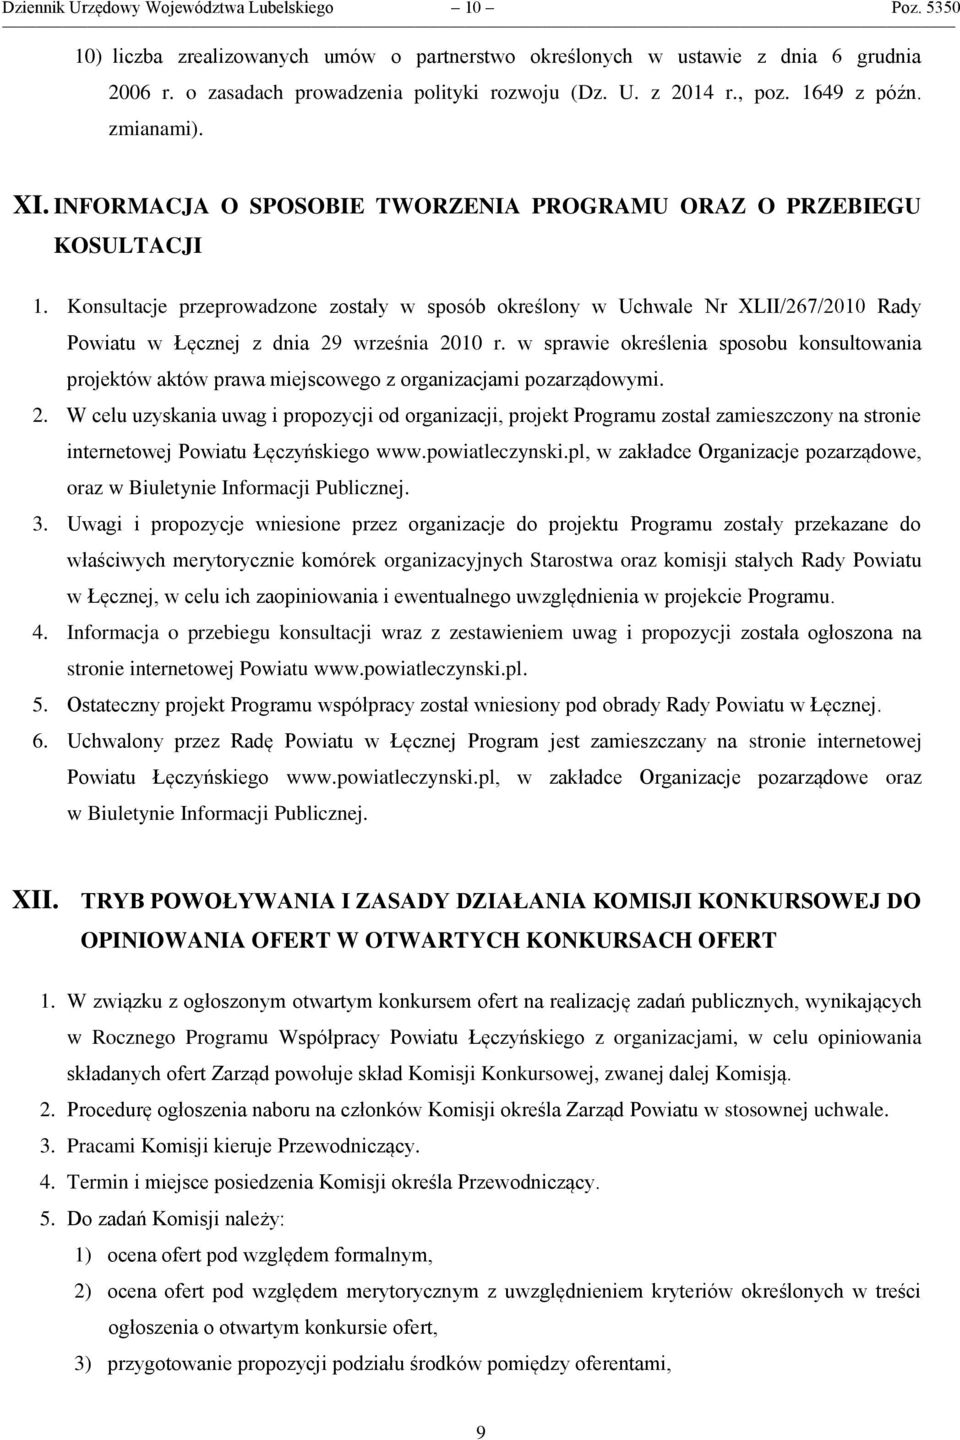 Konsultacje przeprowadzone zostały w sposób określony w Uchwale Nr XLII/267/2010 Rady Powiatu w Łęcznej z dnia 29 września 2010 r.